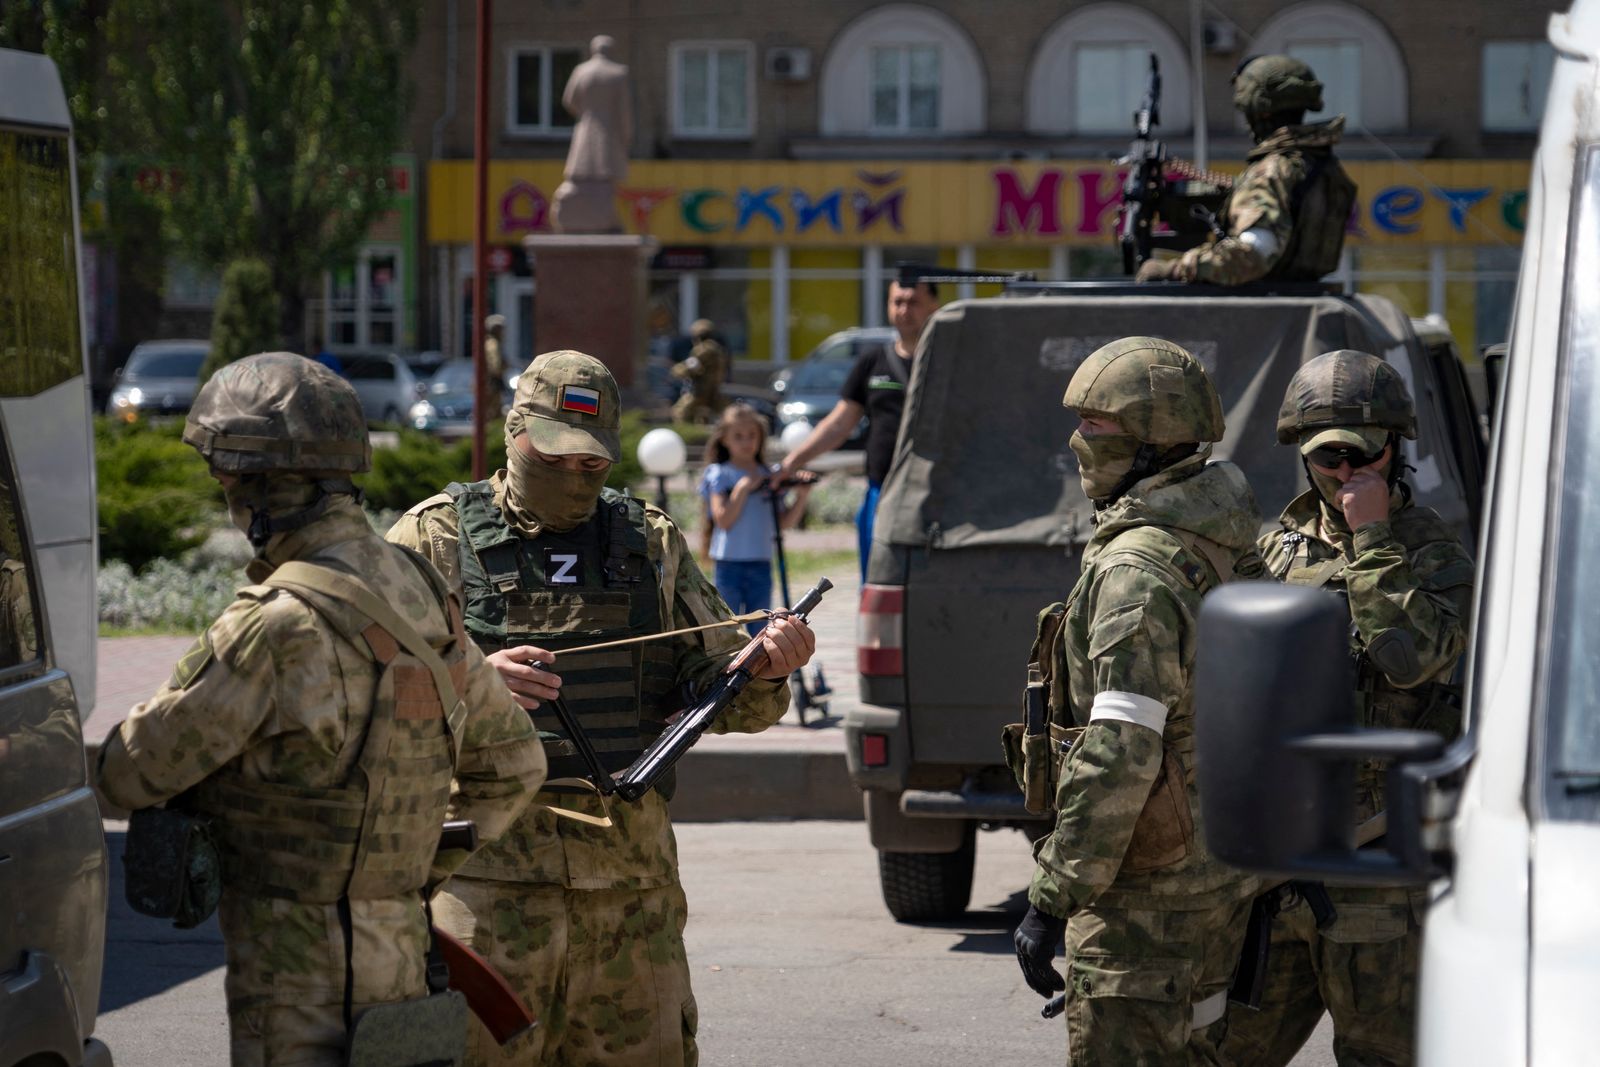 جنود روس خلال دورية في أحد شوارع مدينة ميليتوبول بمنطقة زابوروجيا - 1 مايو 2022 - AFP